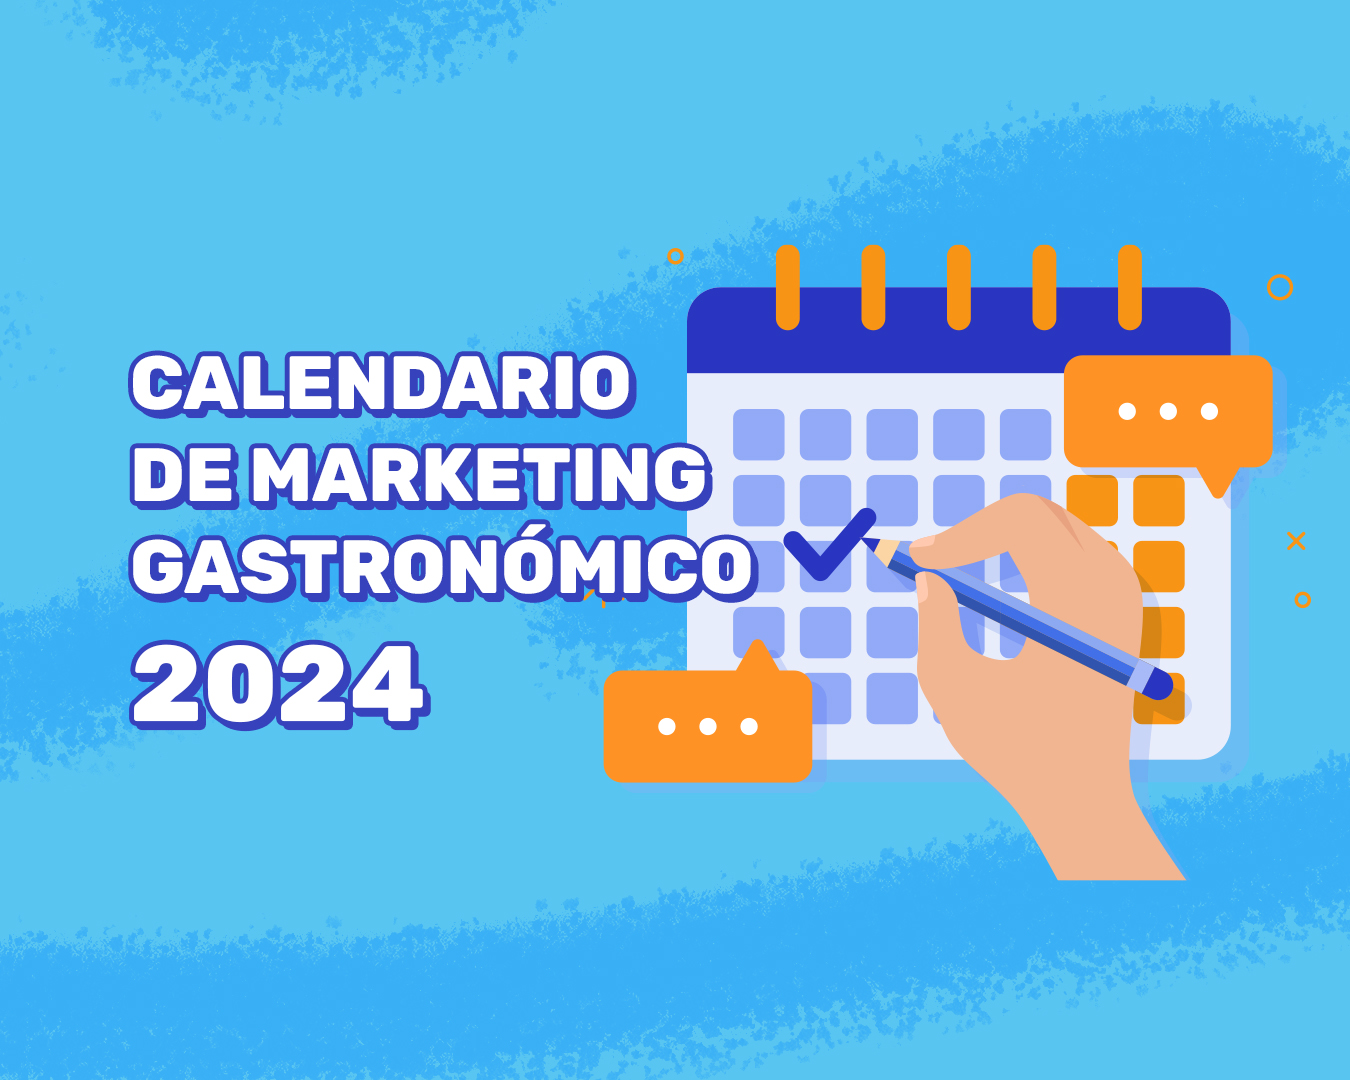 Descargue el calendario de marketing gastronómico 2024 con más de 100 fechas destacadas para impulsar su restaurante.